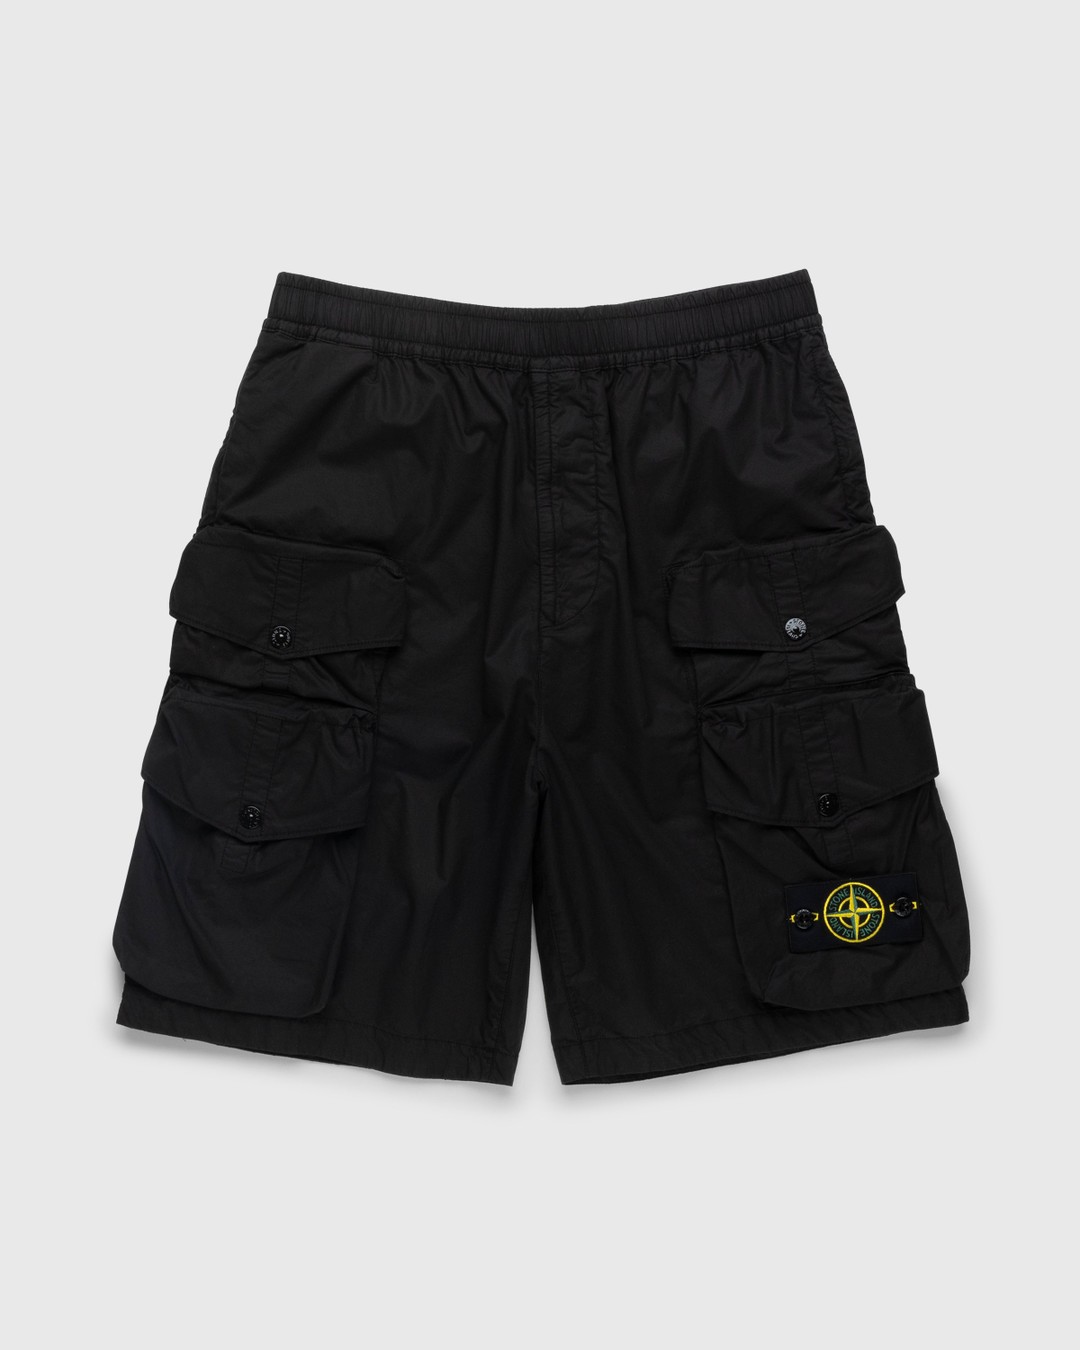 Stone Island – L0103 Garment-Dyed Shorts Black - Shorts - Black - Image 1